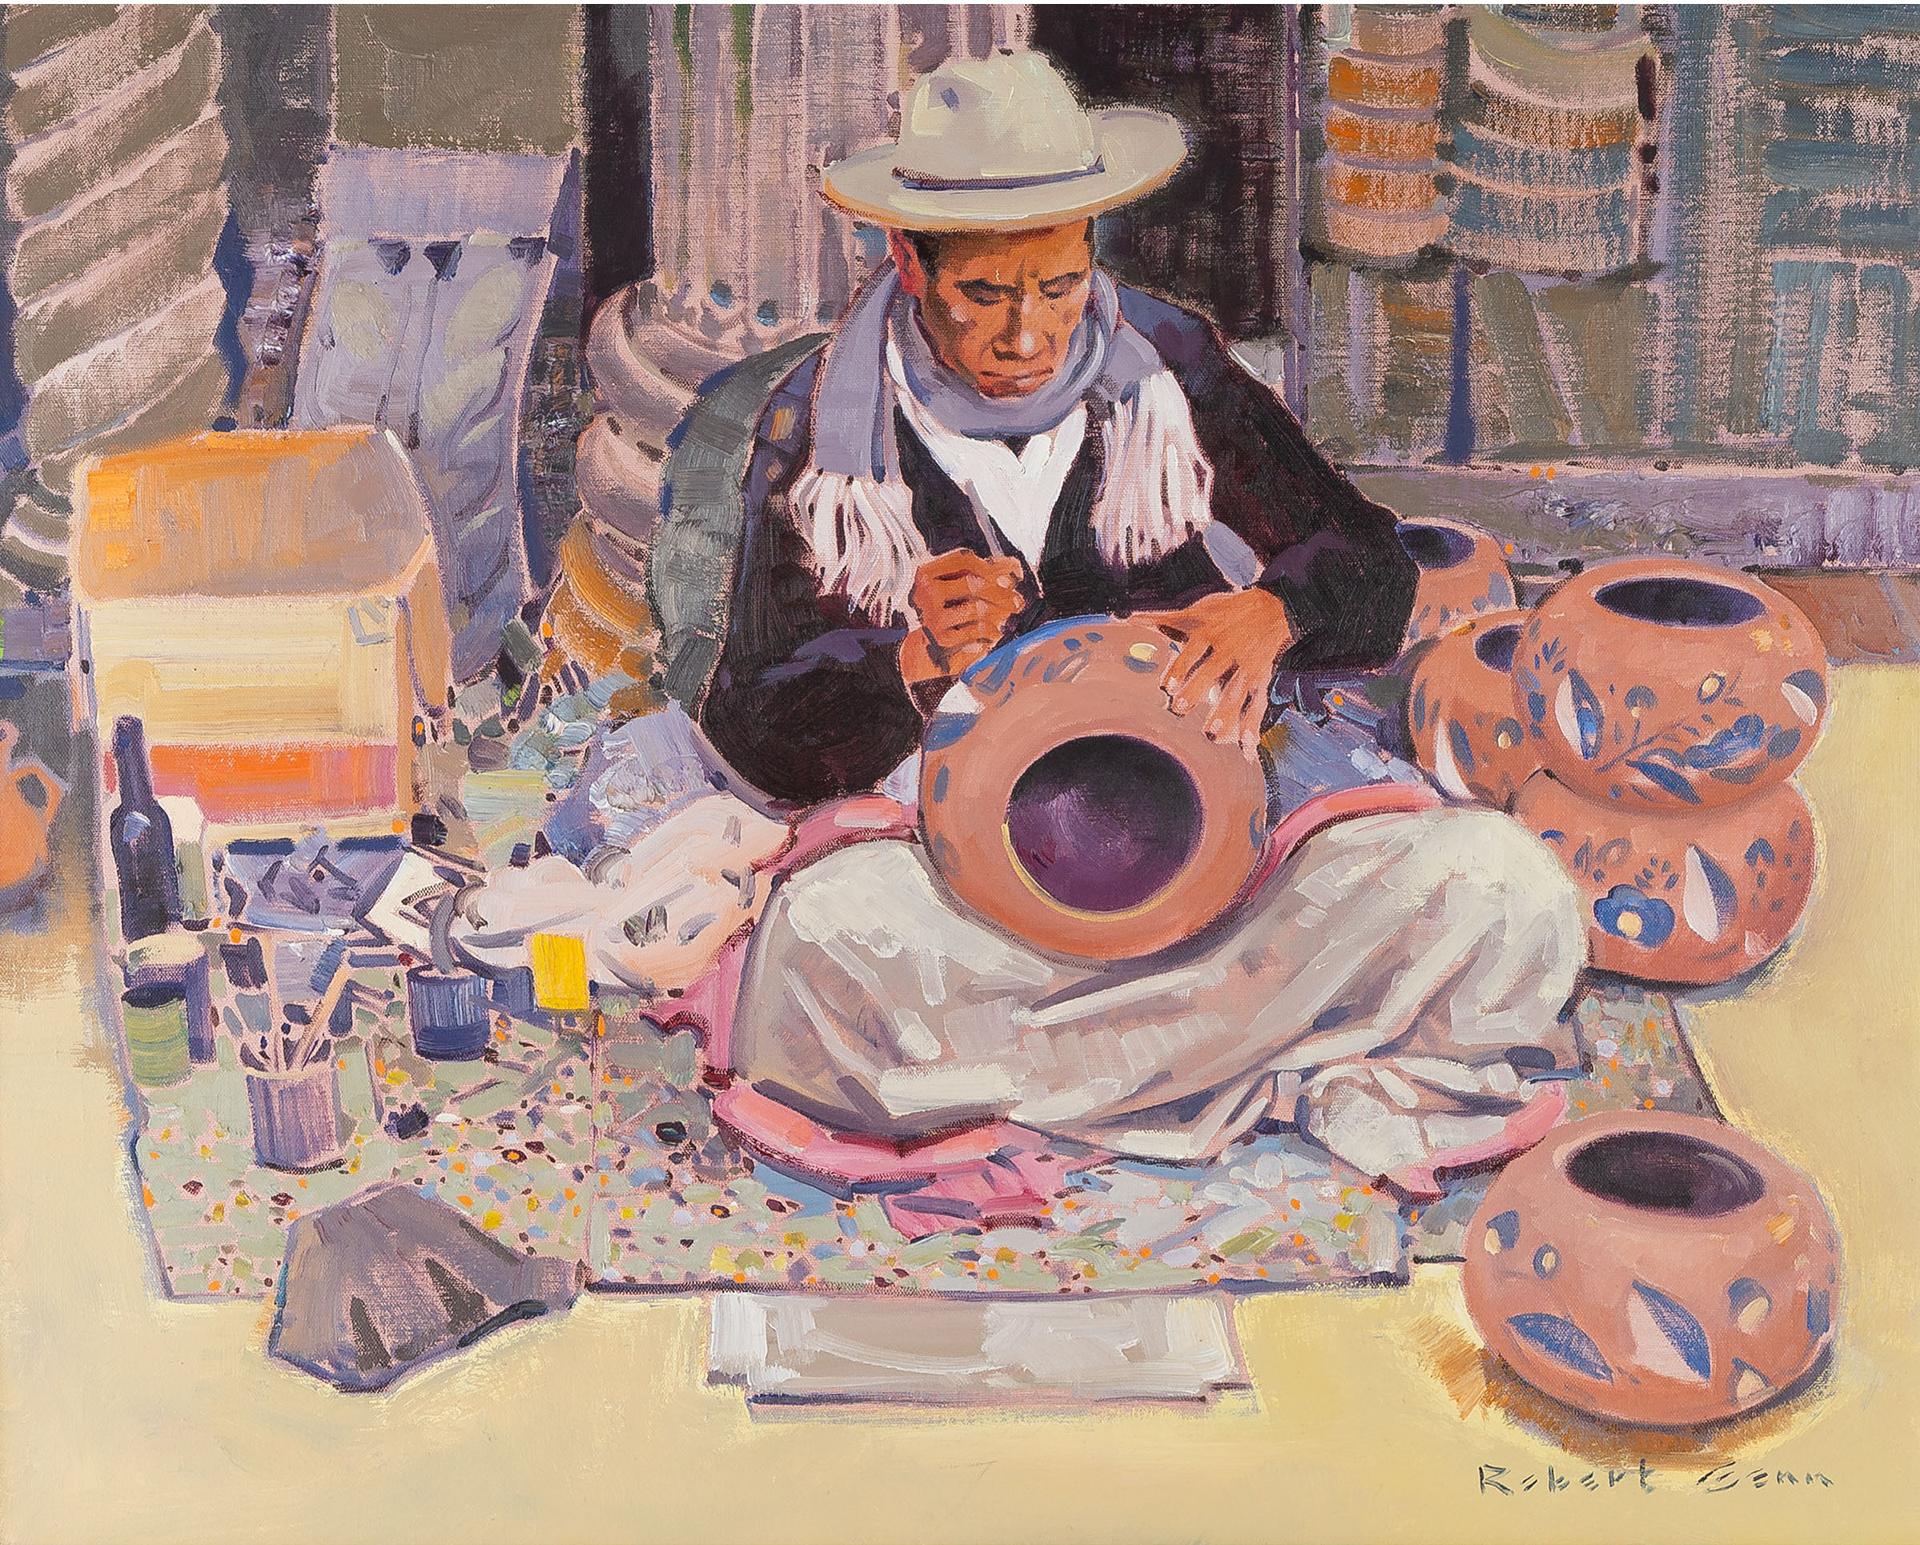 Robert Douglas Genn (1936-2014) - The Pot Painter Of Tlaquepaque